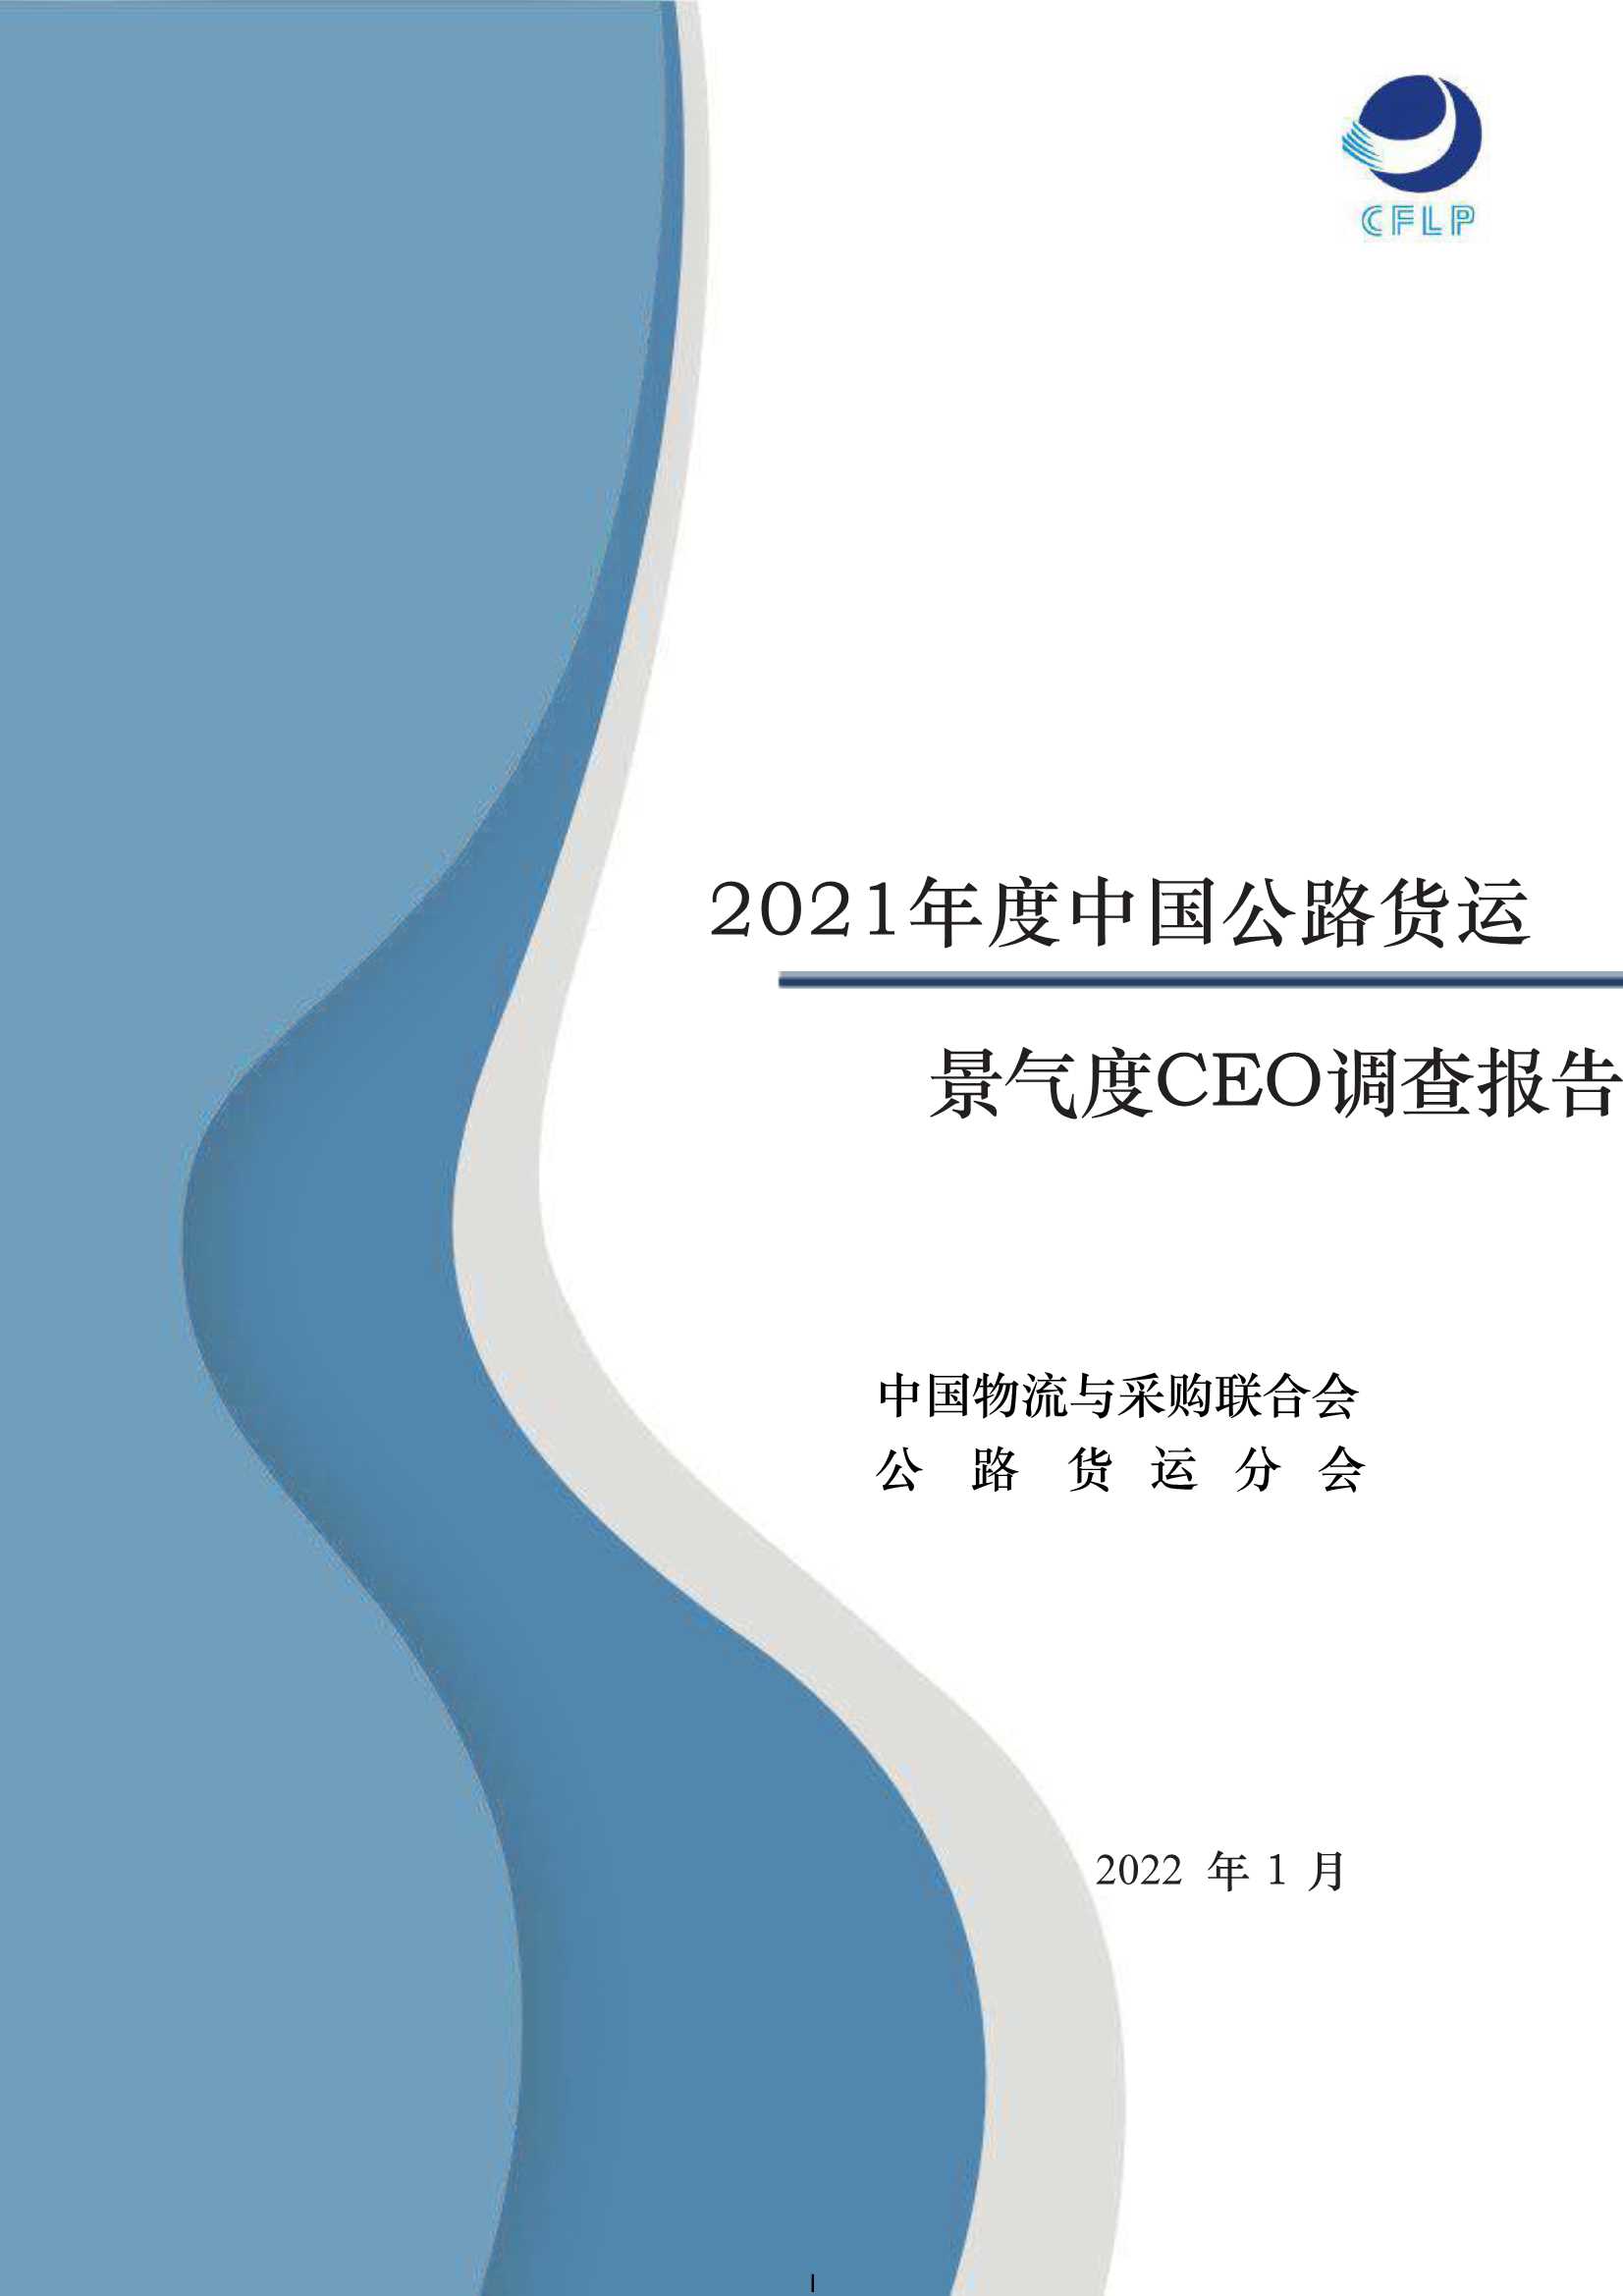 中国物流与采购联合会-2021年度中国公路货运景气度CEO调查报告-2022.02-30页